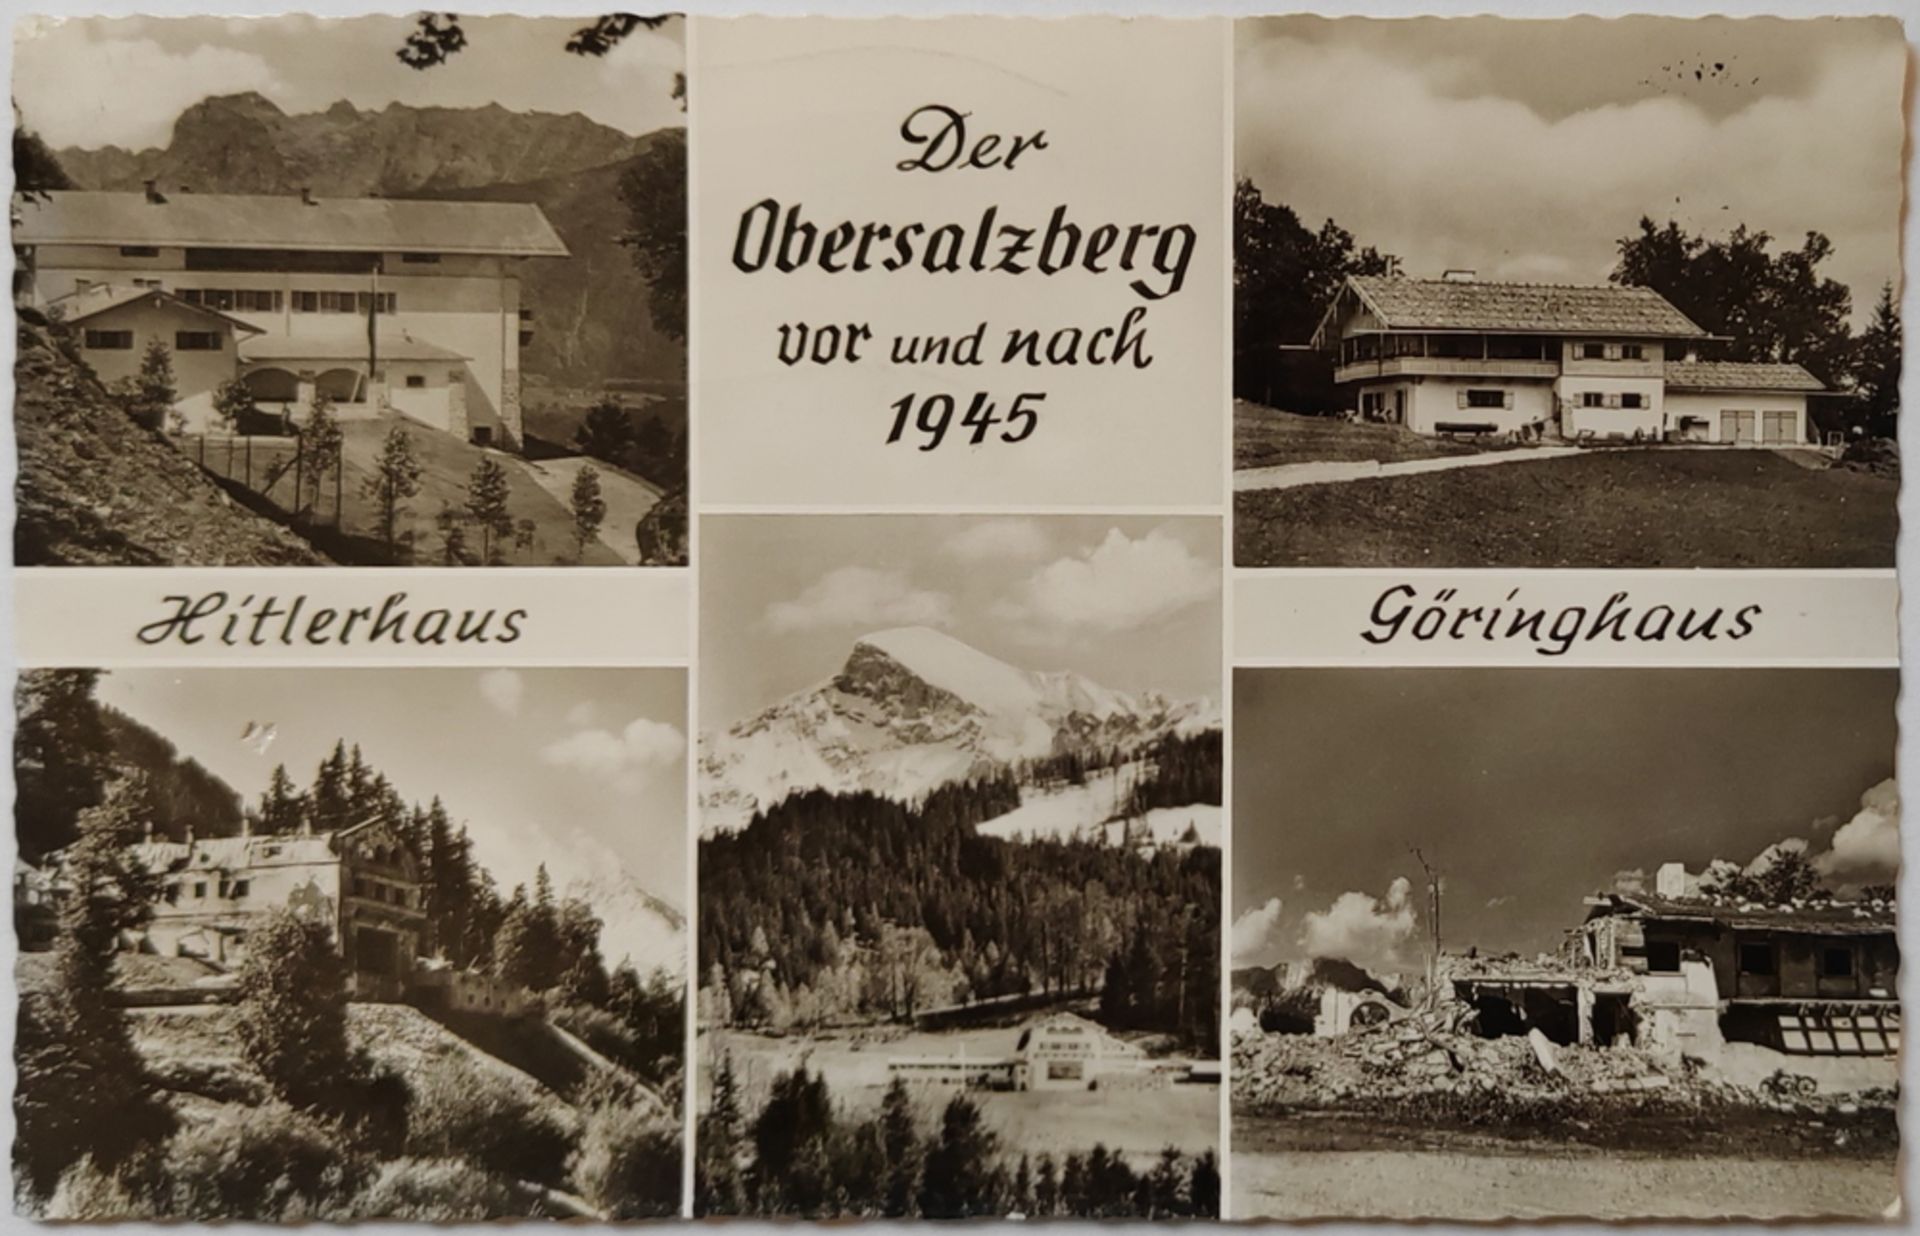 Postkarte "Der Obersalzberg vor und nach 1945" Hitlerhaus und Göringhaus, gelaufen